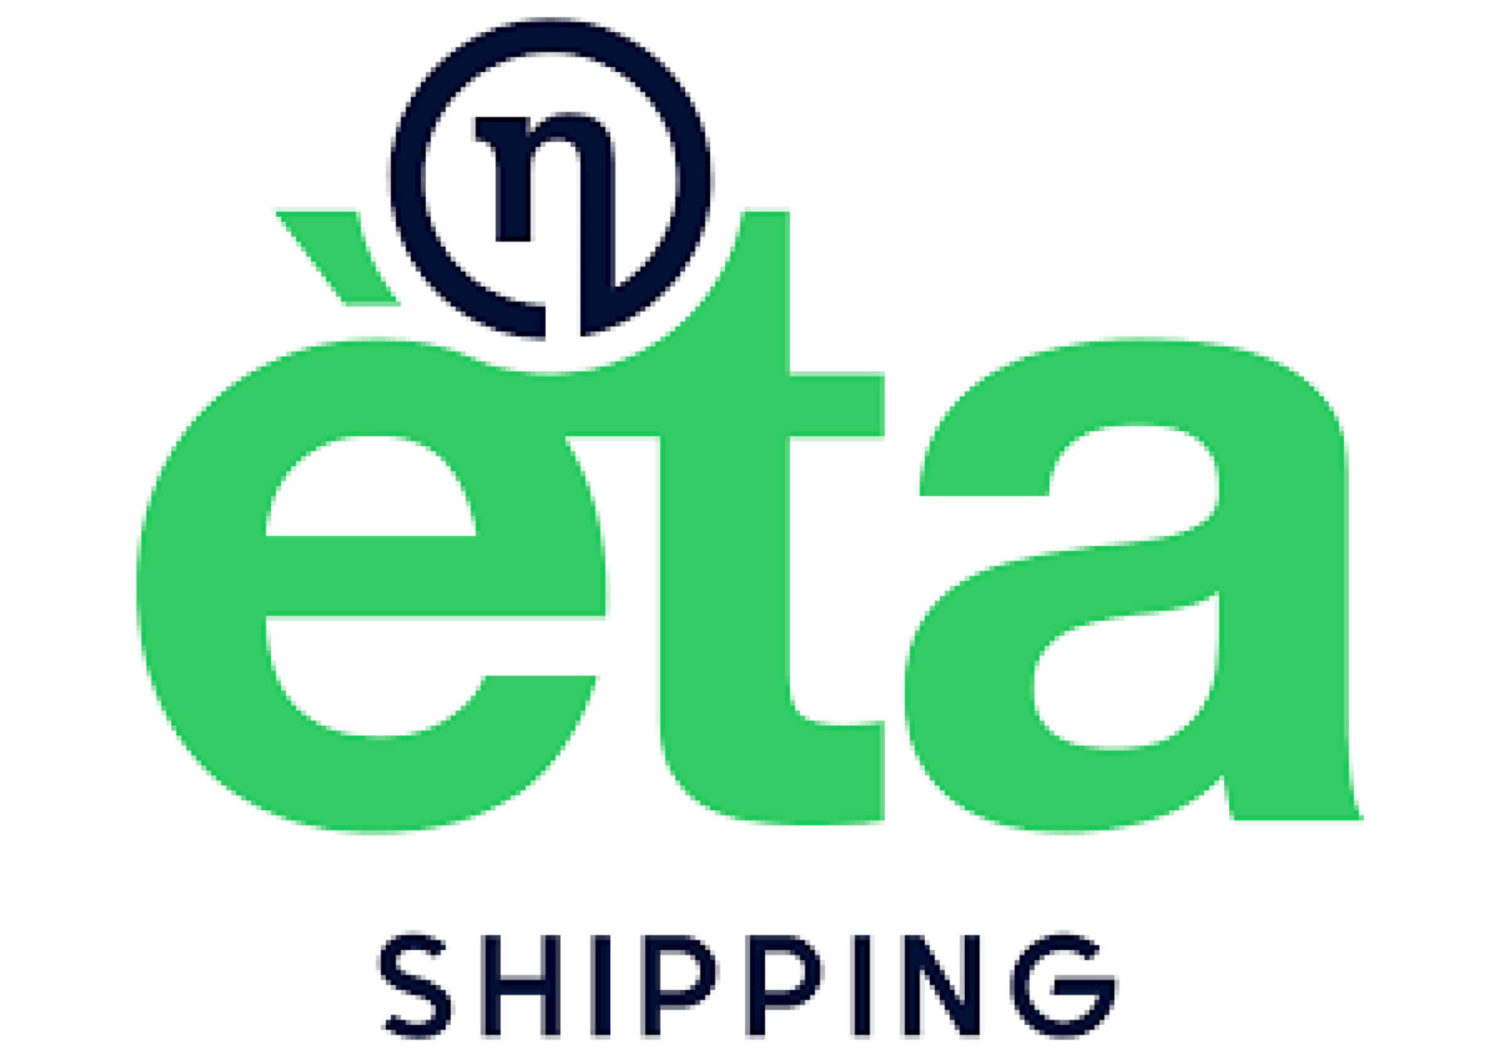 ETA Shipping